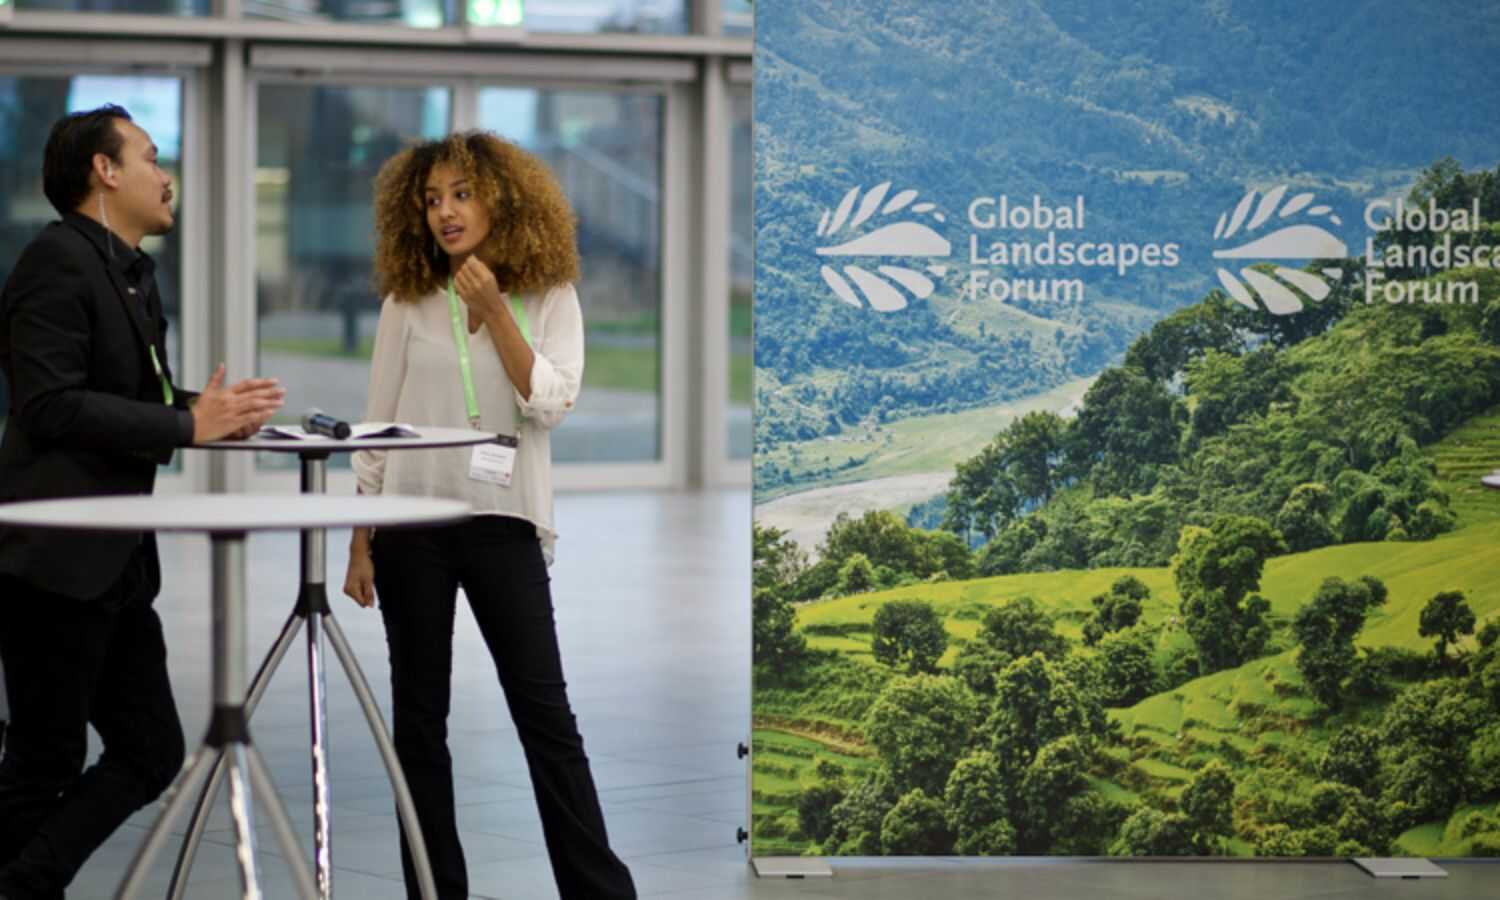 شاب وشابة يتحدثان في مكان انعقاد المنتدى العالمي للمناظر الطبيعية في ألمانيا (GIF)